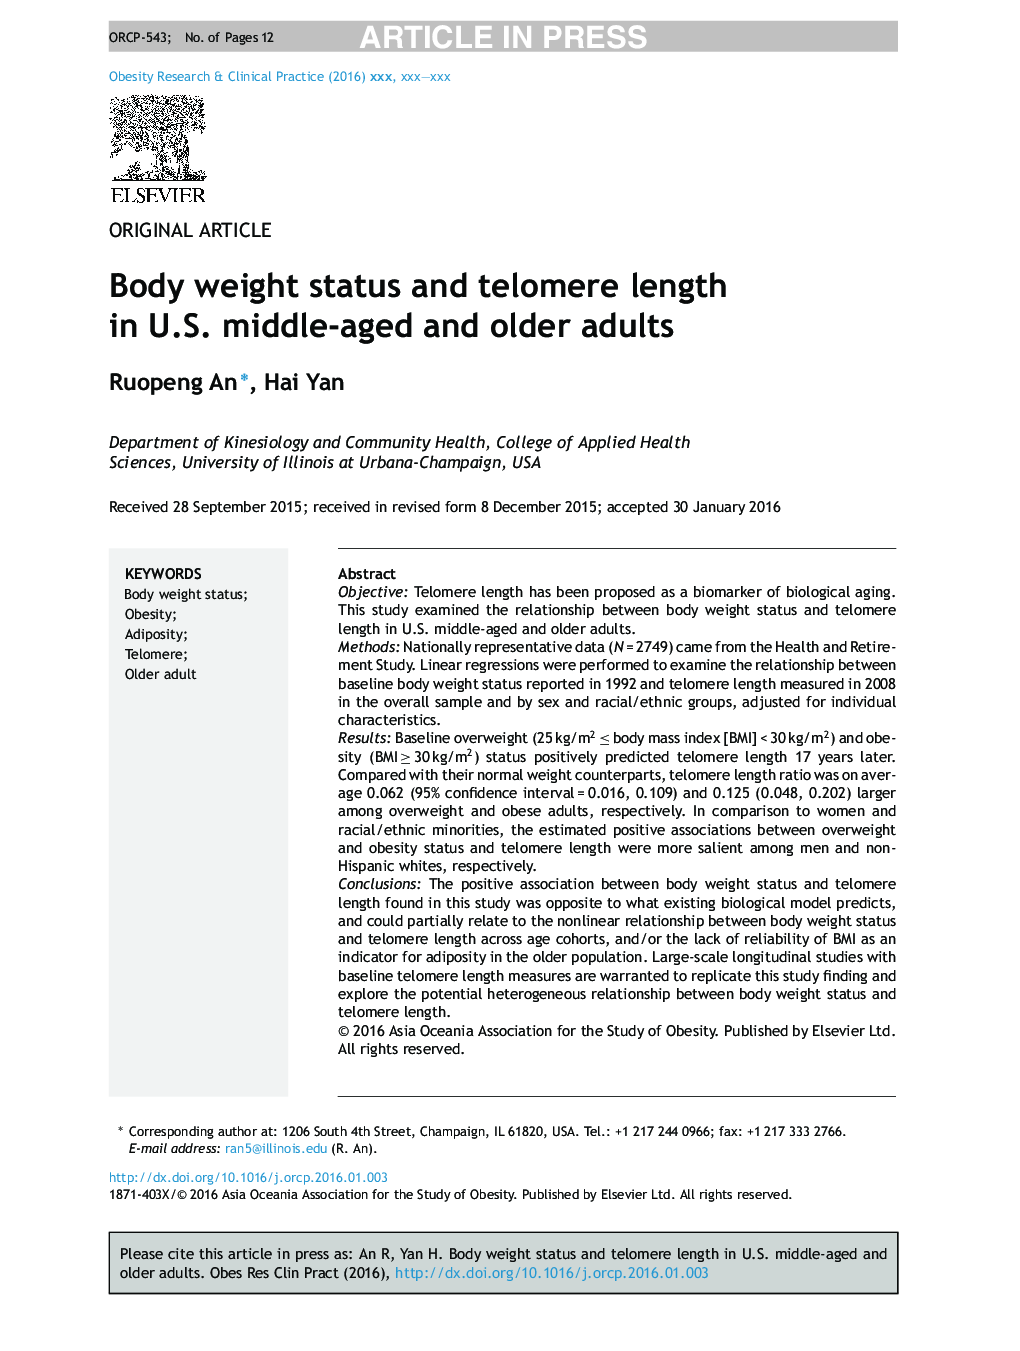 وضعیت وزن بدن و طول تلومر در بزرگسالان متوسط ​​و سالمند ایالات متحده 